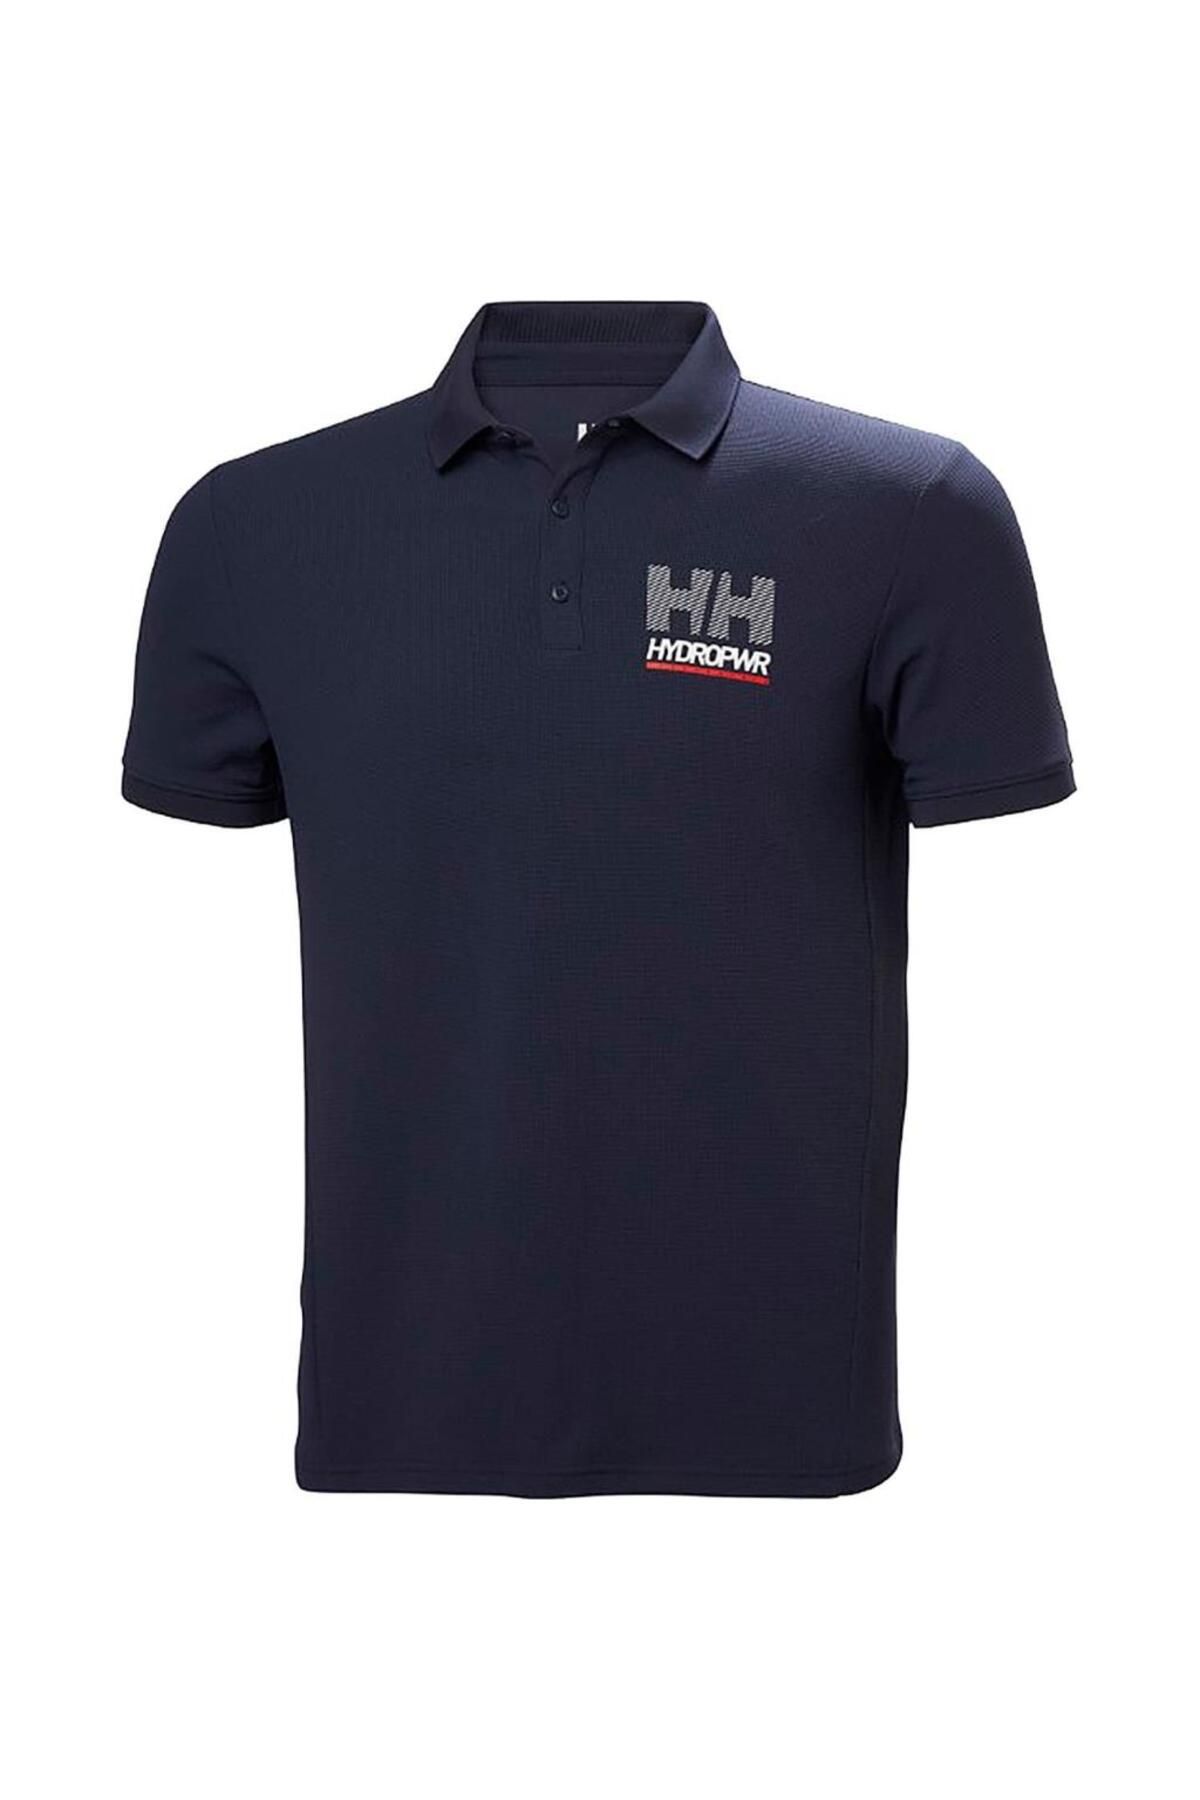 Helly Hansen Hp Race Polo Erkek T-Shirt